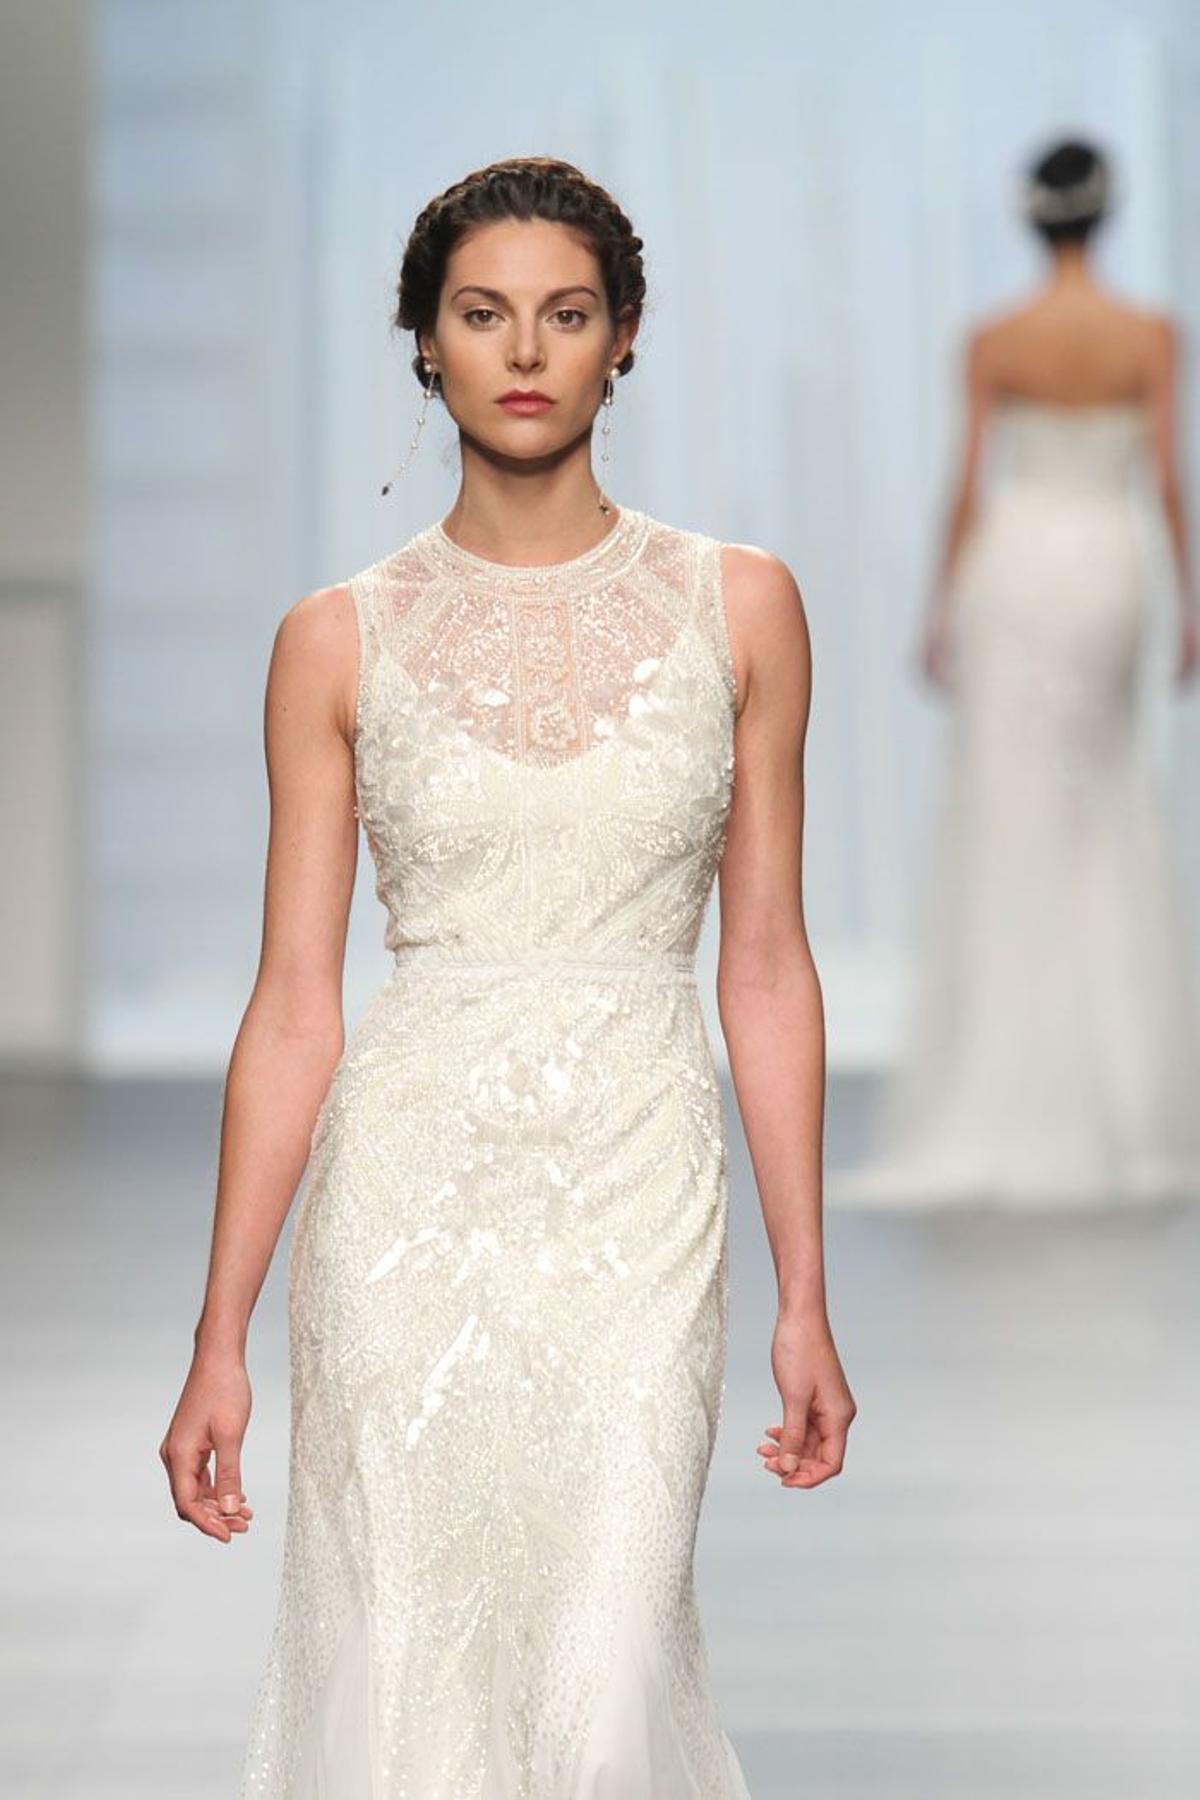 Barcelona Bridal Week 2015: Rosa Clará encajes elegantes